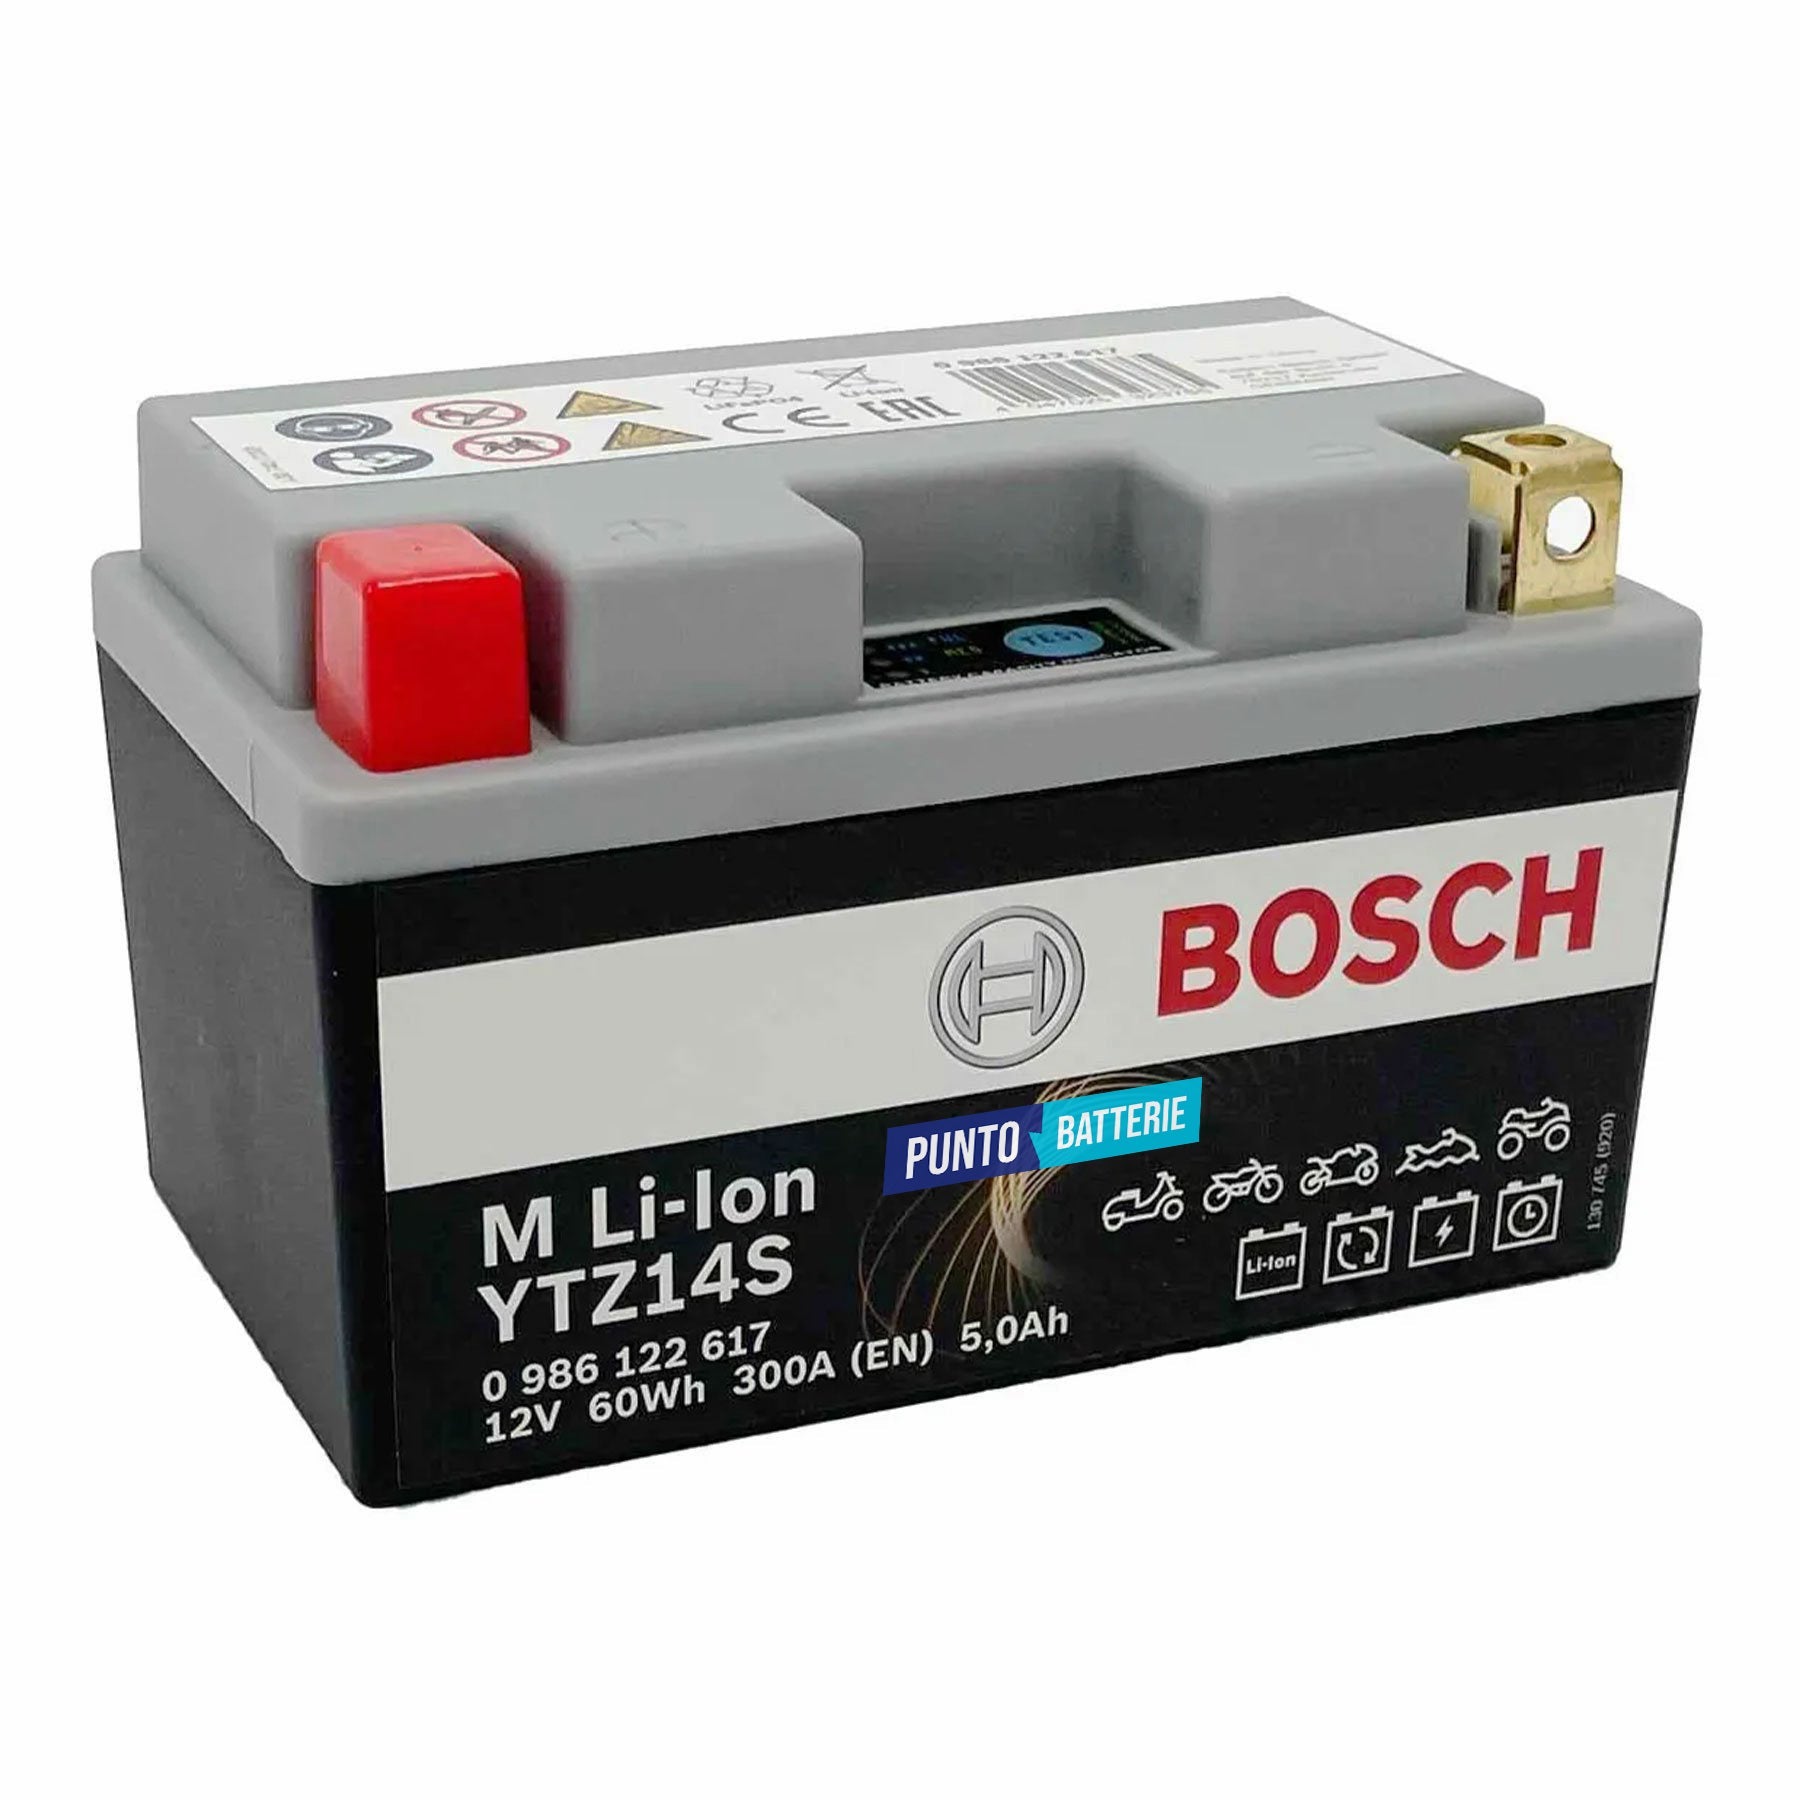 Batteria originale Bosch M Li-ion LTZ14S, dimensioni 150 x 87 x 164, polo positivo a sinistra, 12 volt, 5 amperora, 300 ampere. Batteria per moto, scooter e powersport.